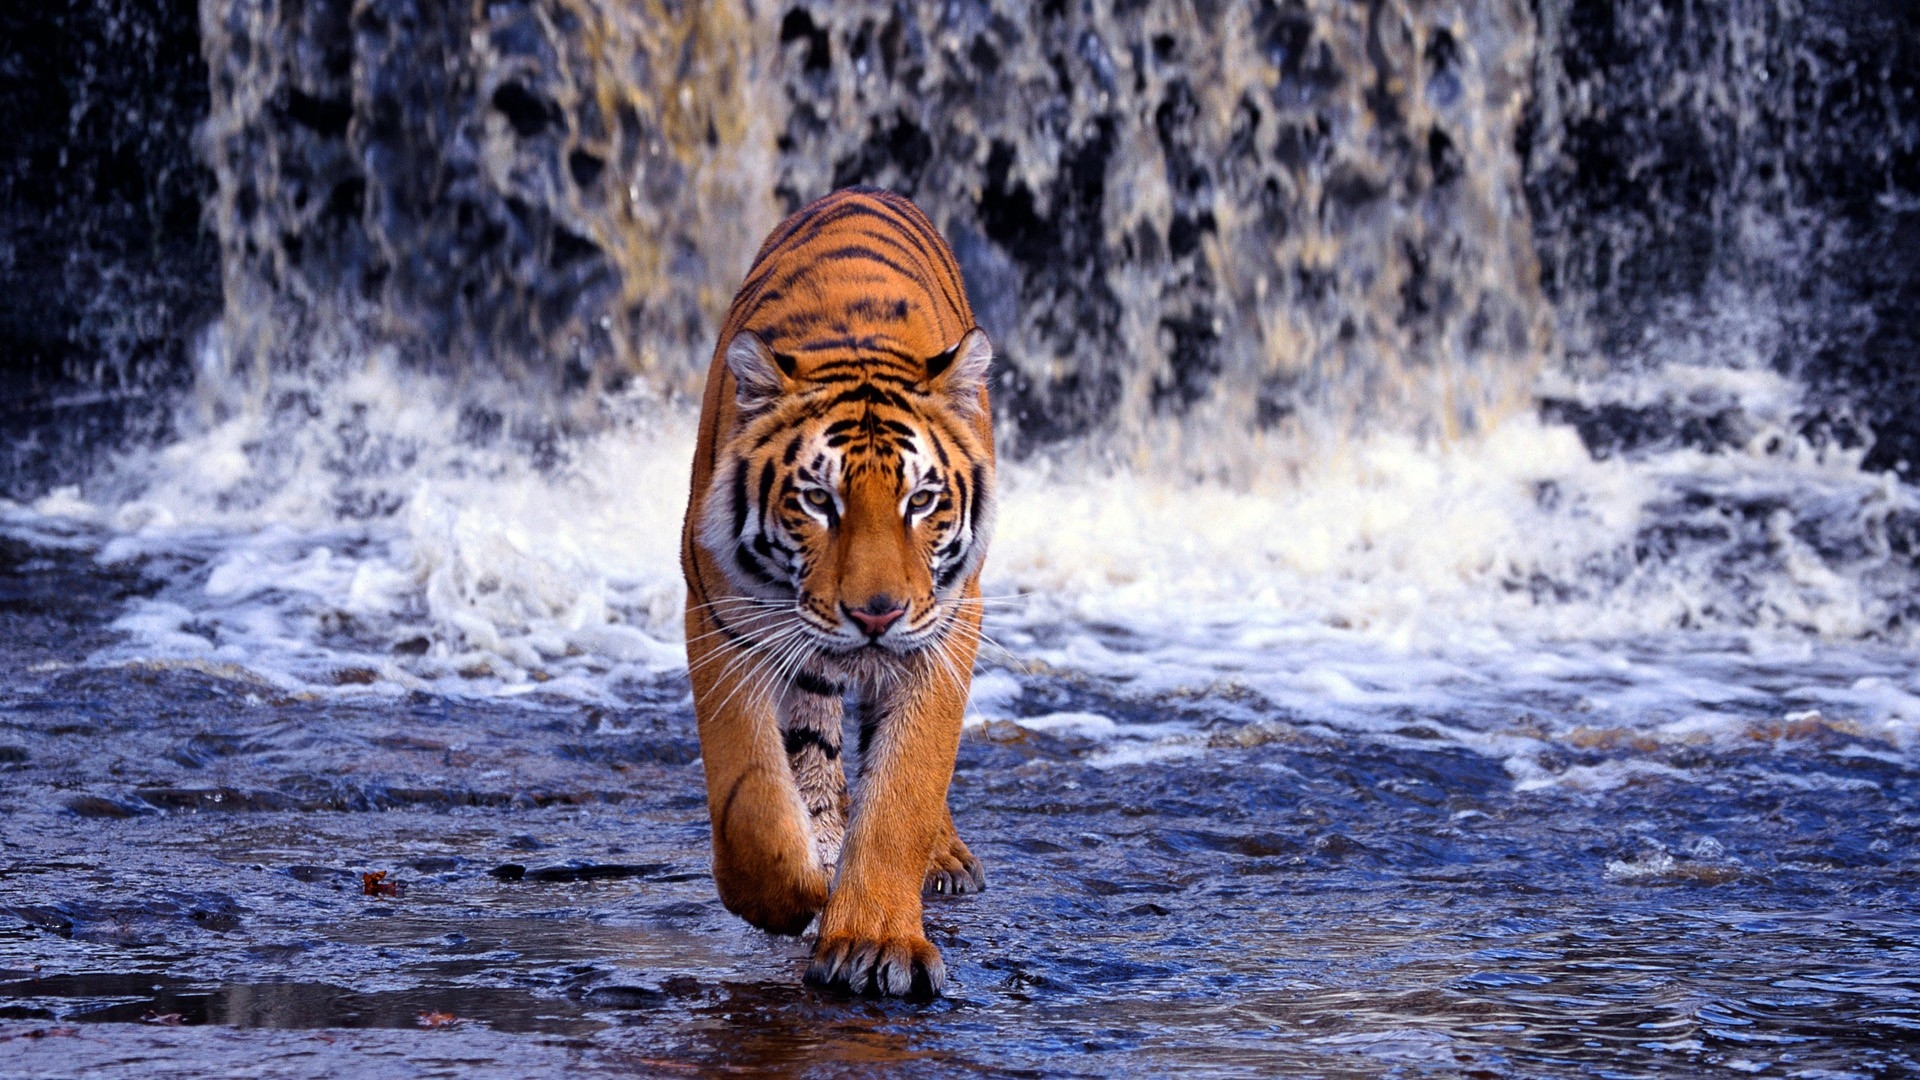 Angry Tiger Wallpaper - Ndemok.com